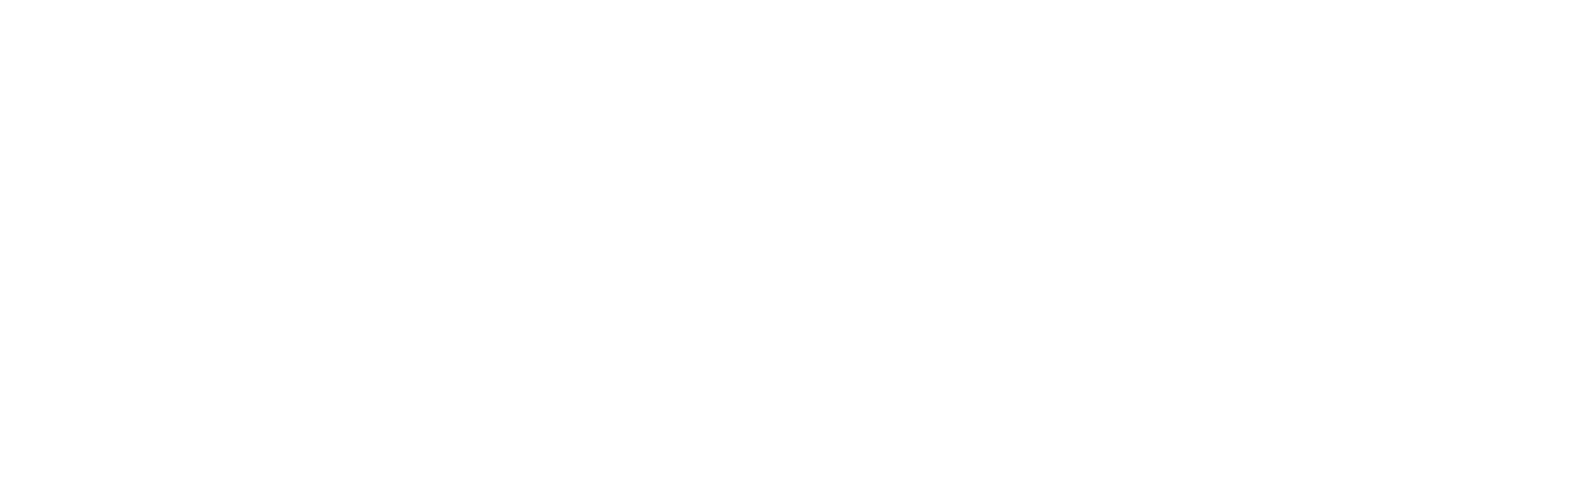 Industrie De Nora logo large for dark backgrounds (transparent PNG)